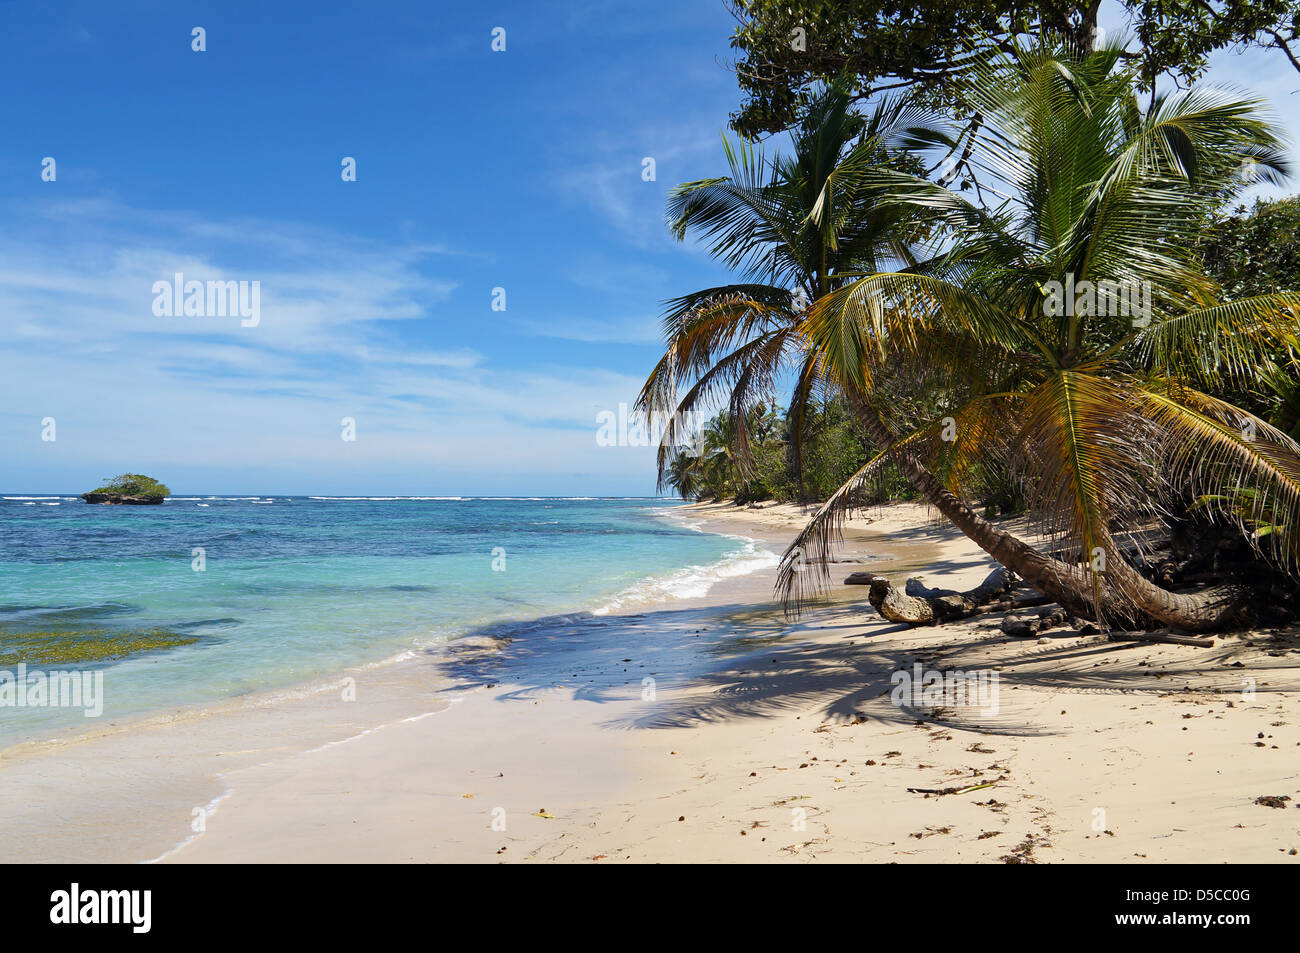 Tropical selvaggia spiaggia di sabbia con un isolotto, palme da cocco e acque turchesi Foto Stock